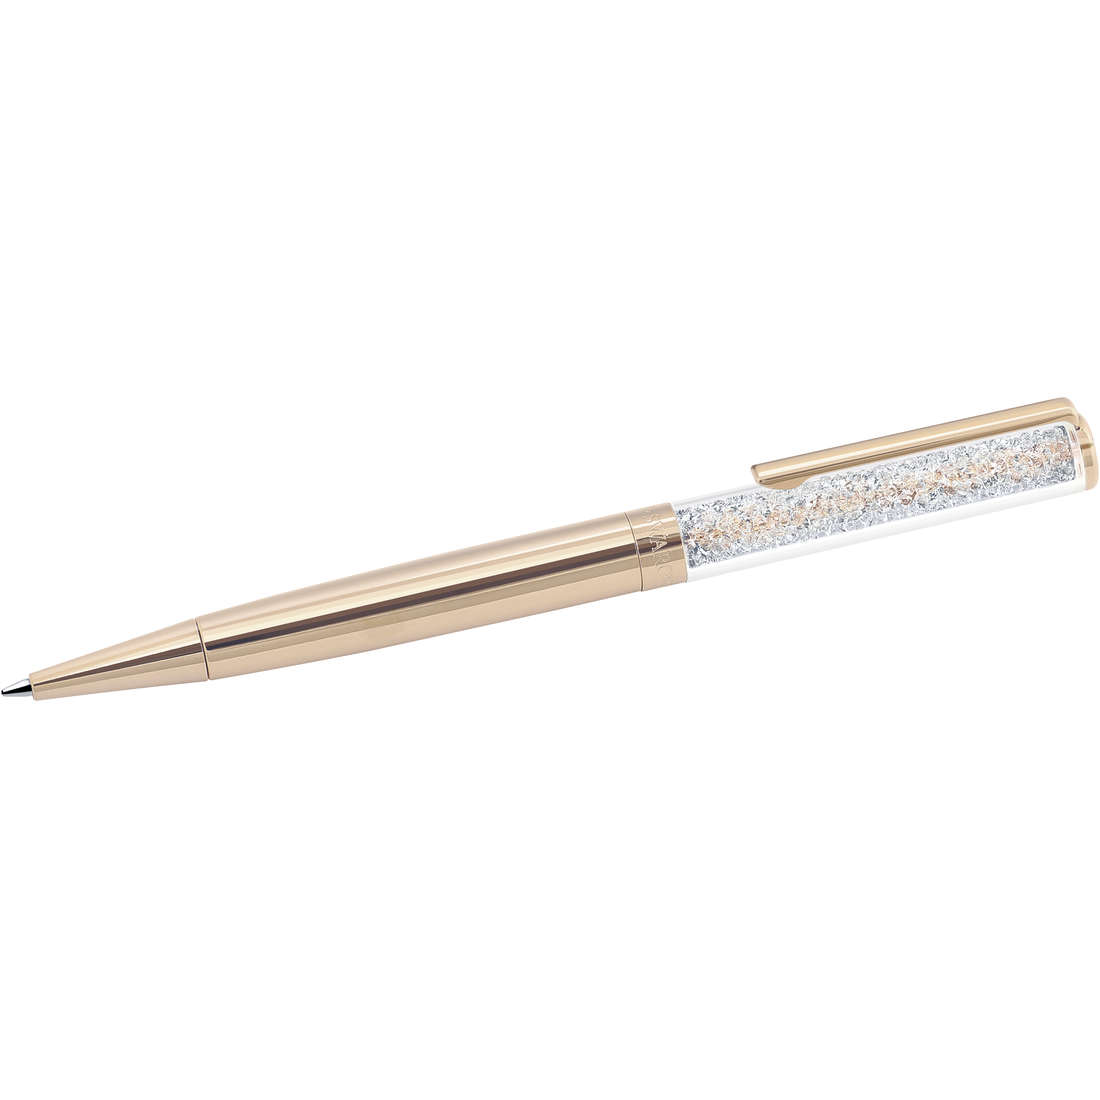 Stift Kugelschreiber Swarovski Crystalline da frau 5224390